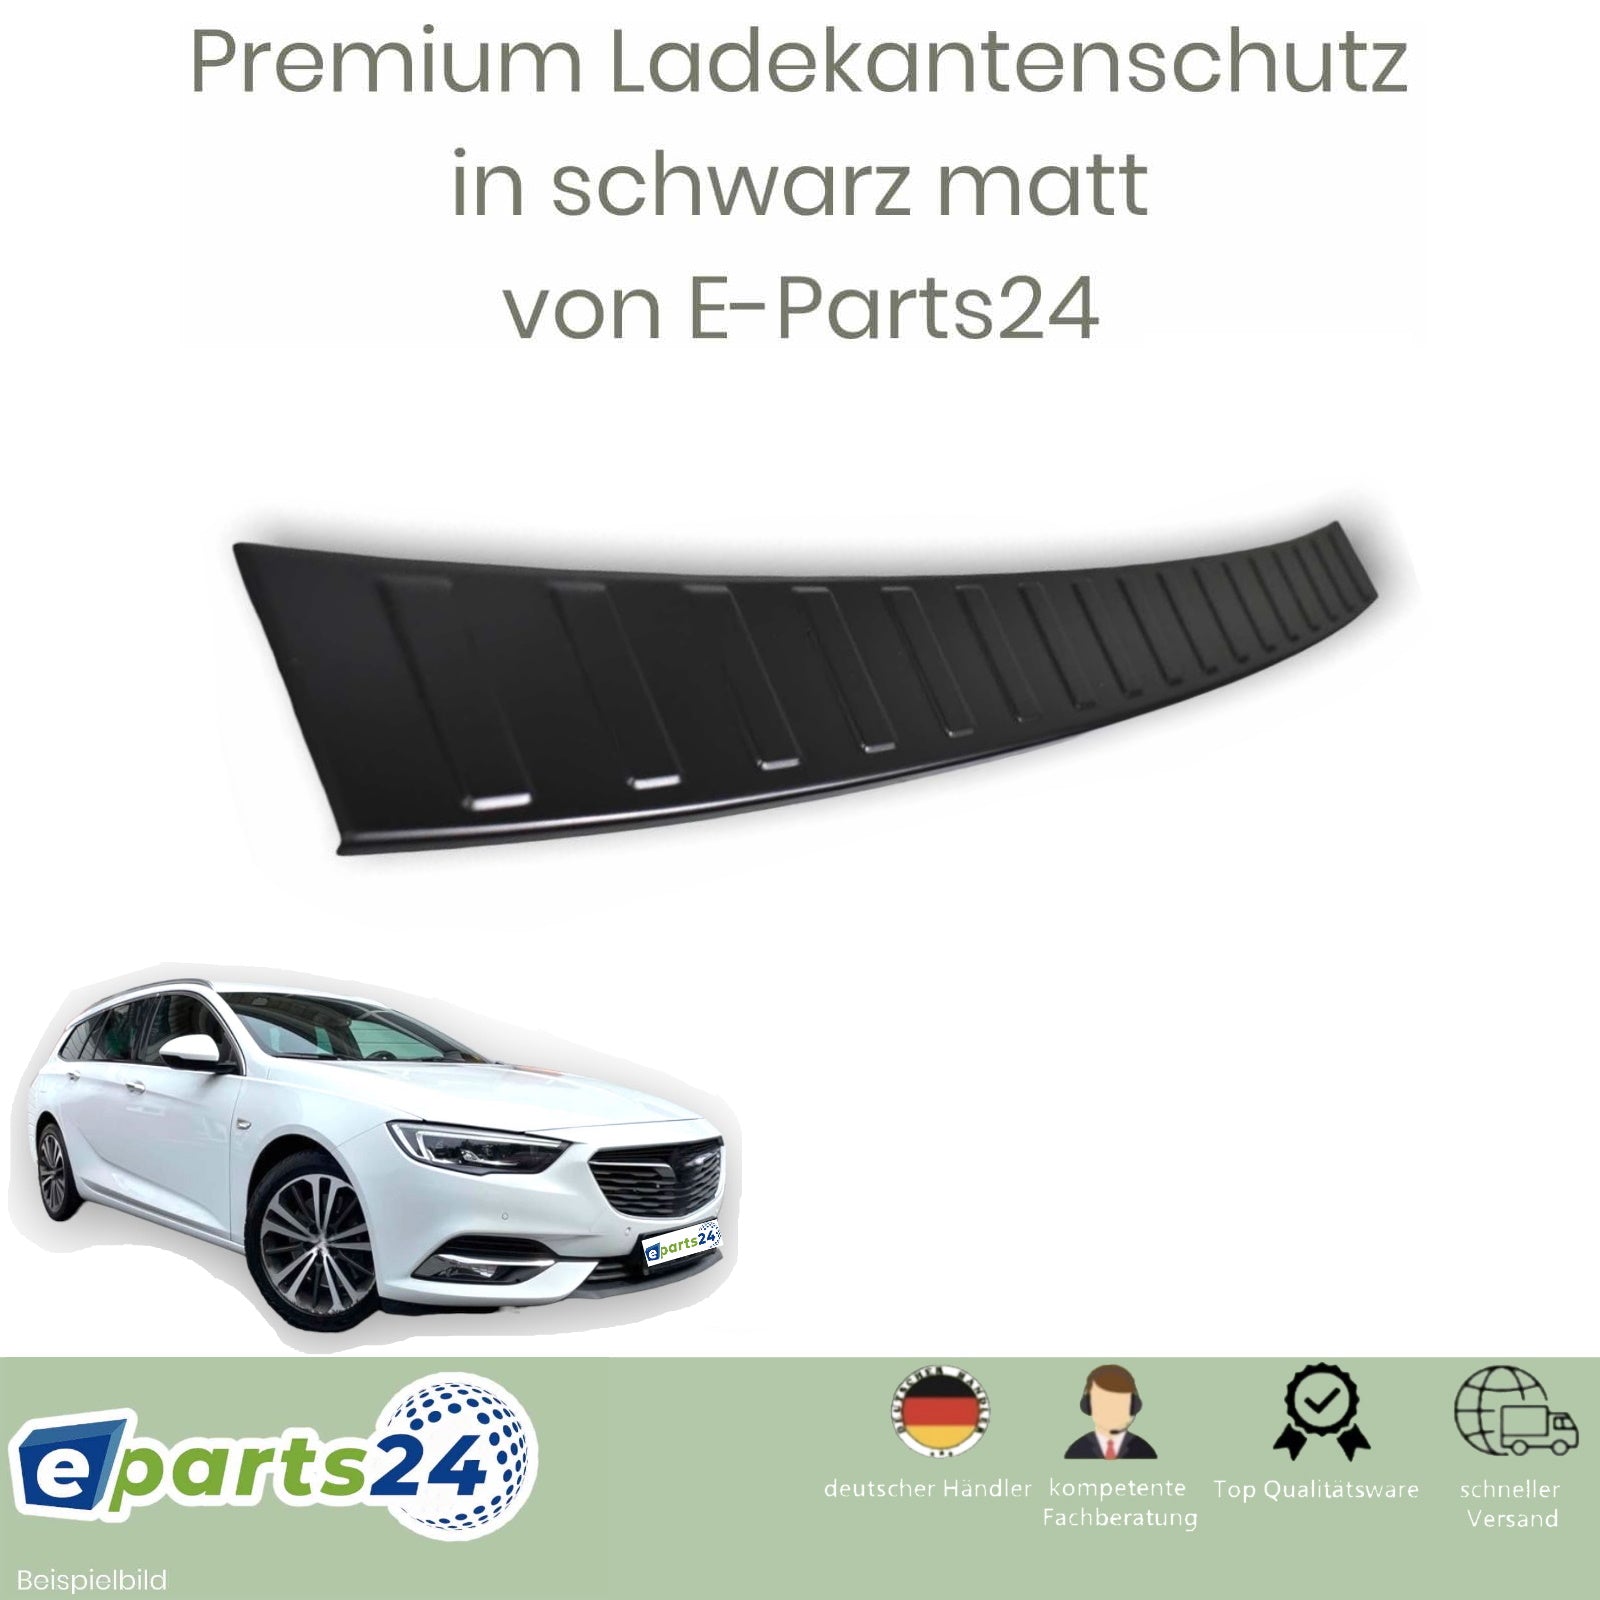 https://e-parts24.de/cdn/shop/products/w447-lks-schwarz-matt_2ea146bb-28e9-4cbc-aa25-d0af30bd5fc1.jpg?v=1676419432